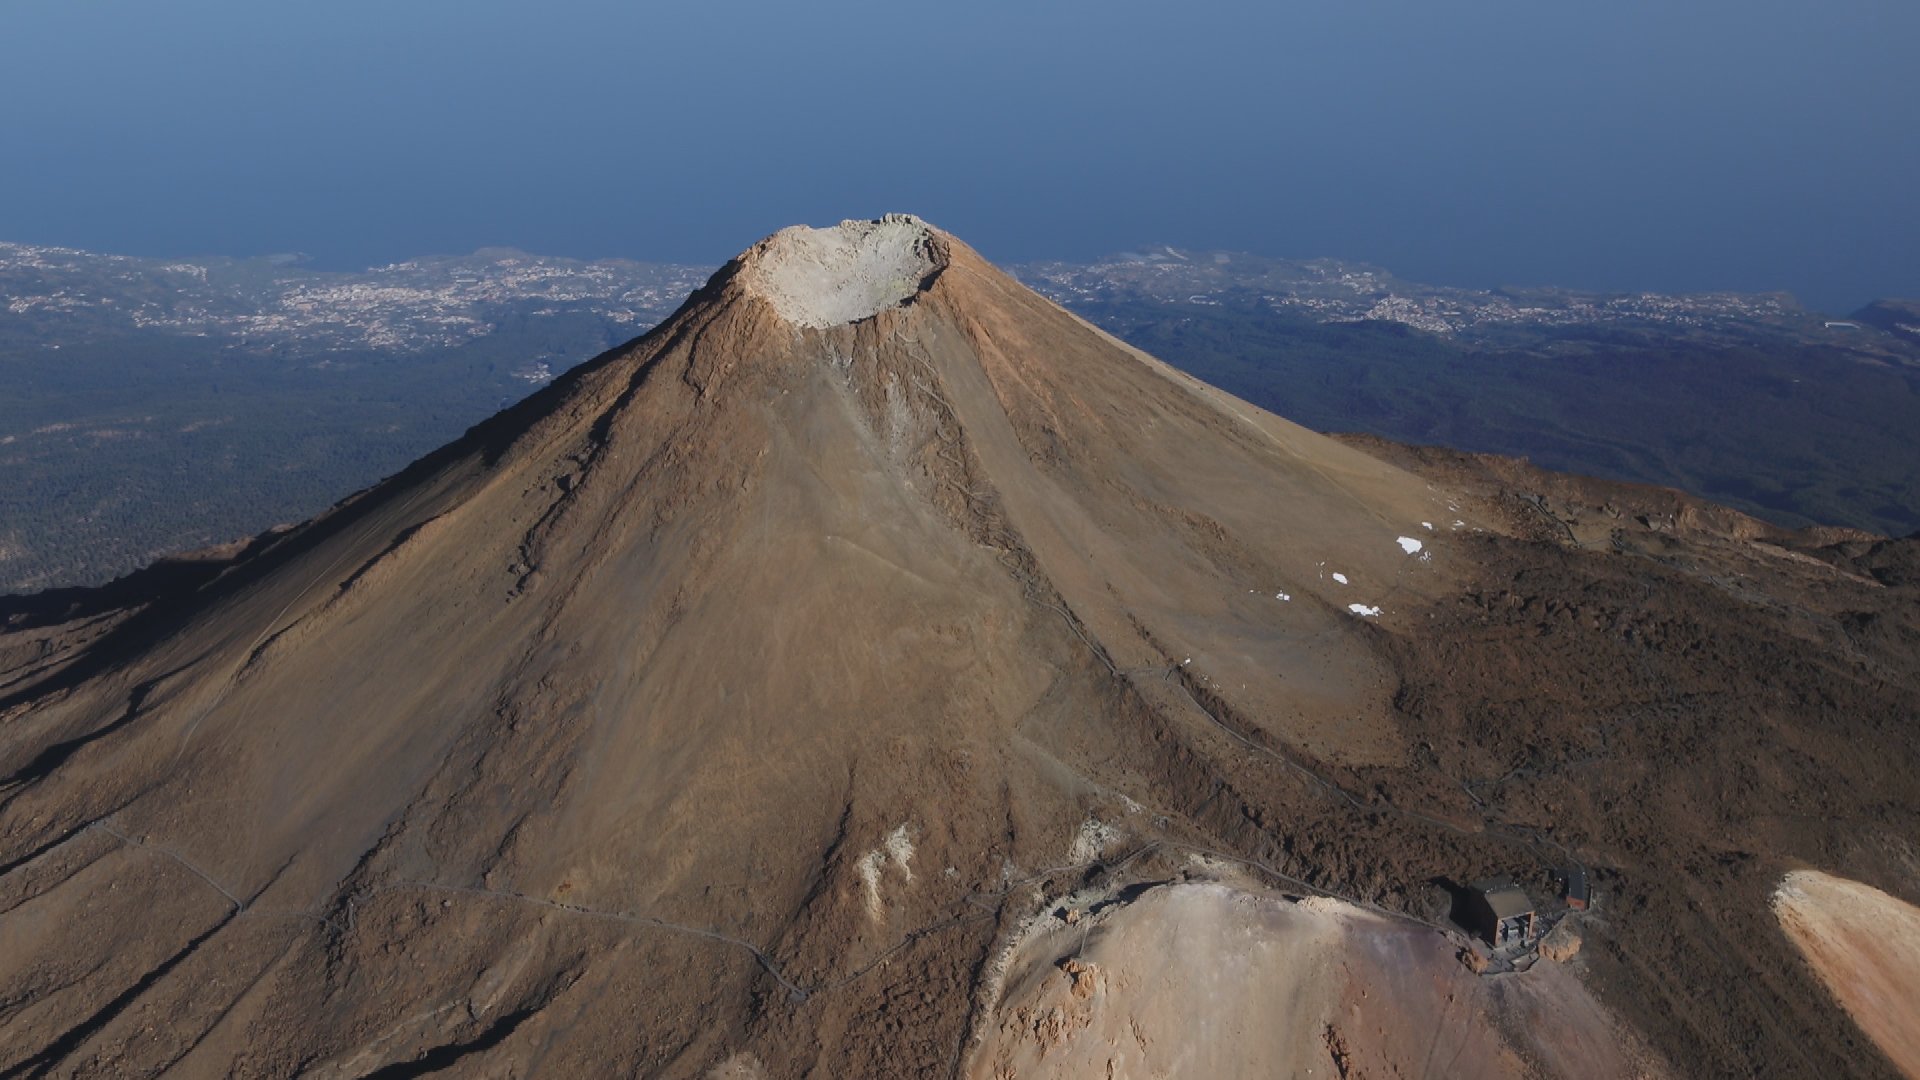 世界遺産 در توییتر スペイン最高峰 標高3718メートルのテイデ山は 同一の火口から何度も何度も噴火にしたことによって美しい円錐形になりました これは 成層火山 とよばれる火山で 日本の富士山と同じです 世界遺産 スペイン カナリア諸島 テイデ国立公園